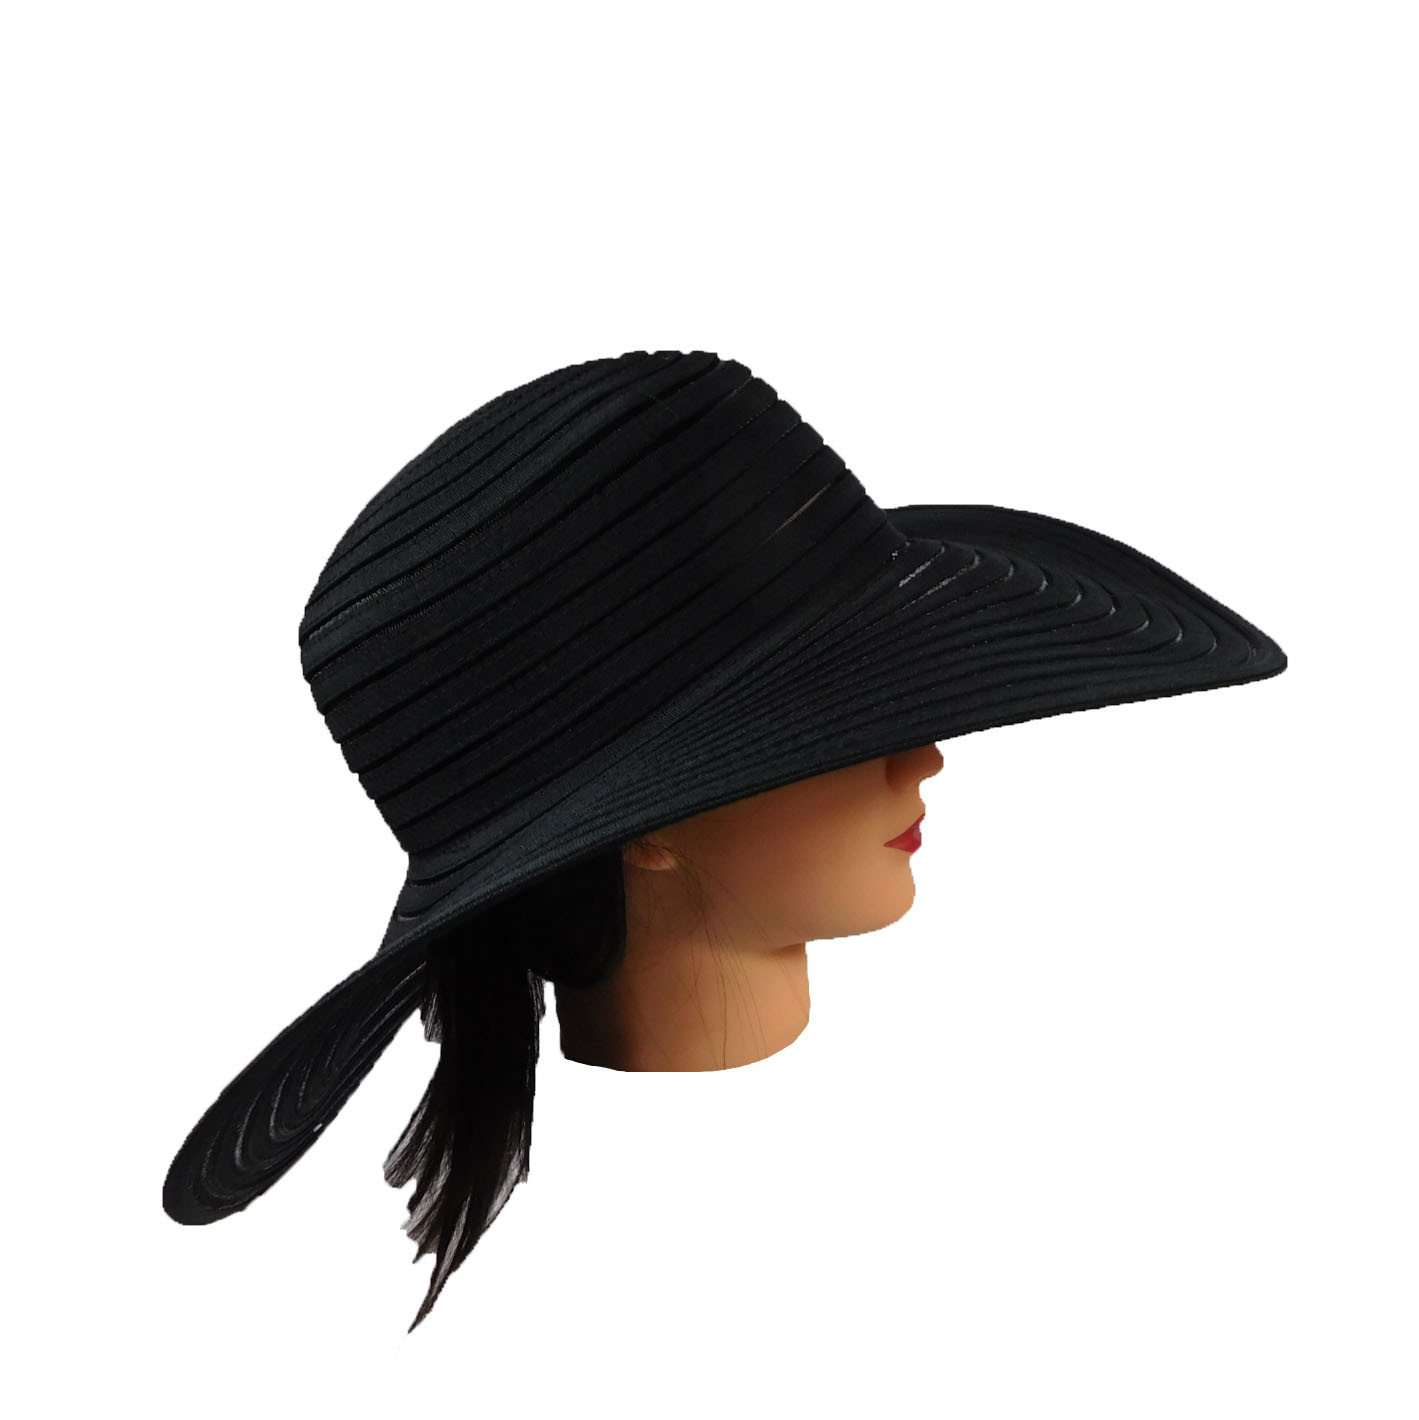 Ribbon and Mesh Elegant Floppy Hat, Floppy Hat - SetarTrading Hats 